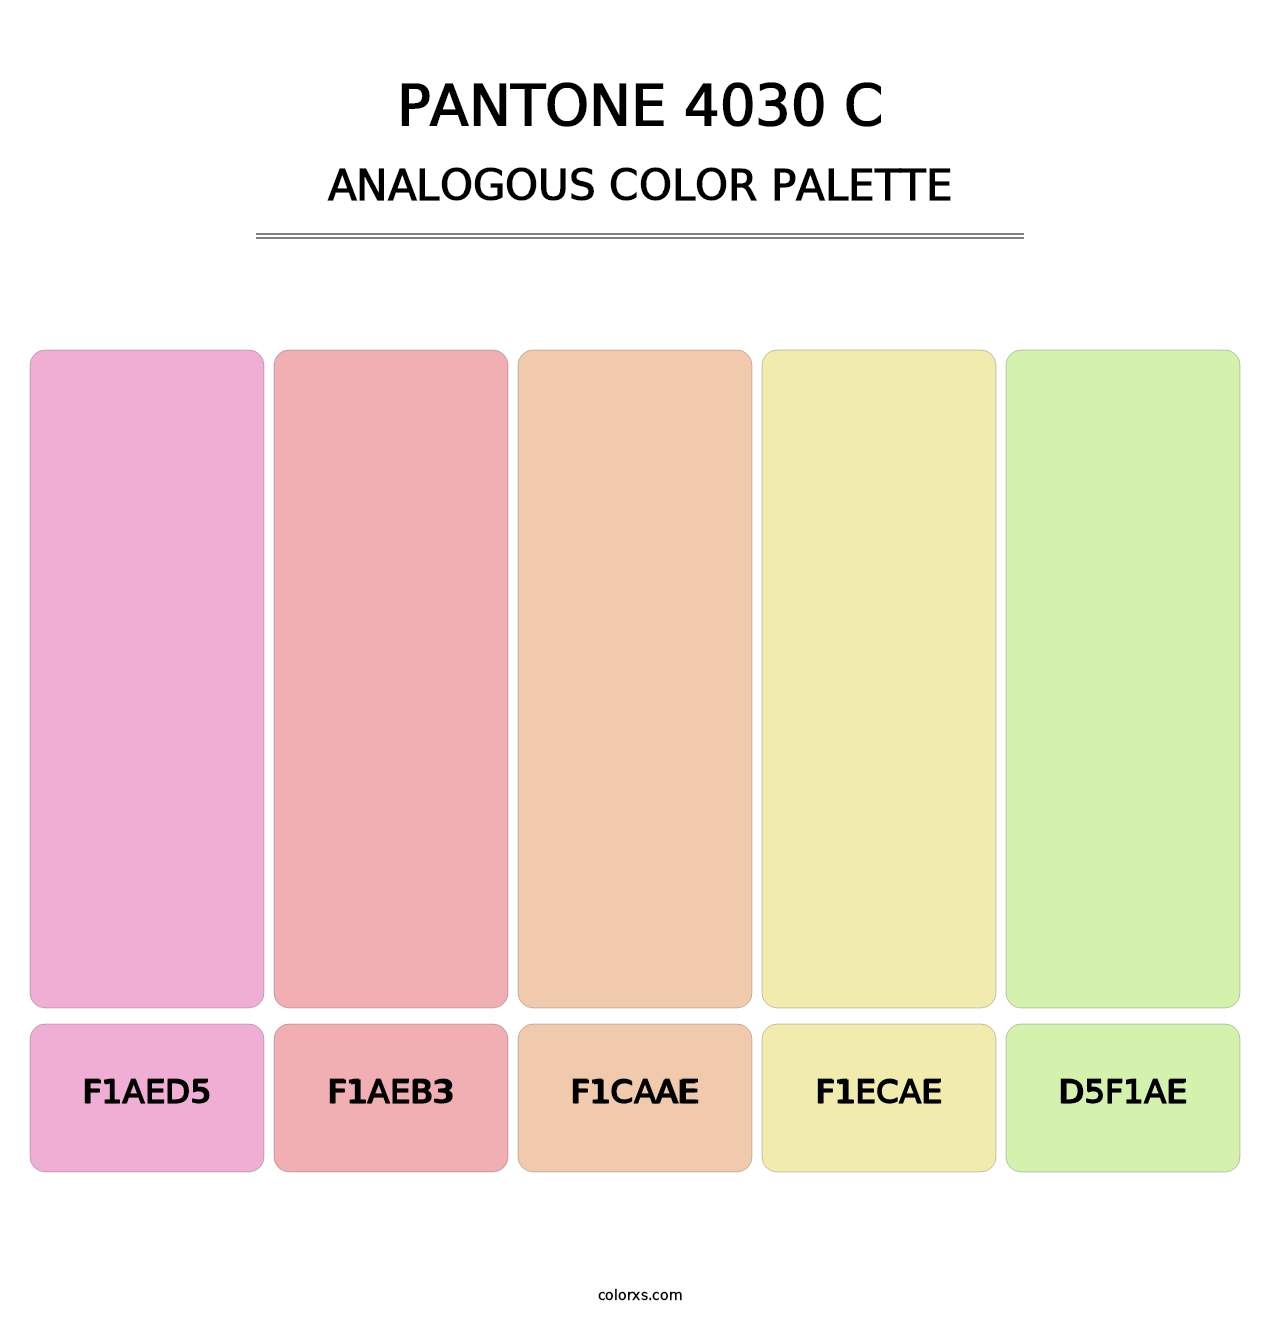 PANTONE 4030 C - Analogous Color Palette